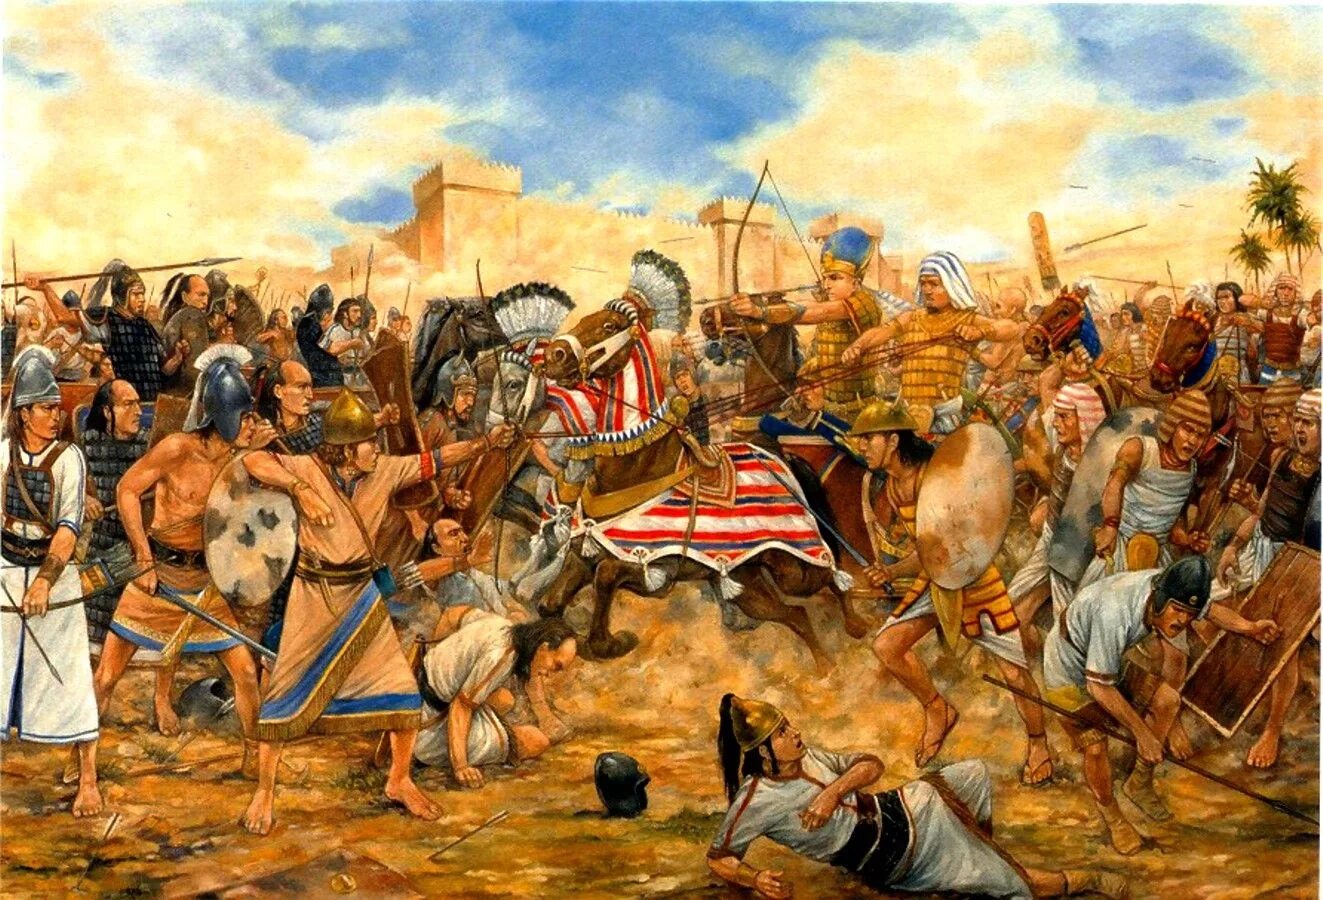 Сильнейшие армии в истории. Битва при Кадеше древний Египет. Битва в Кадеше. Битва египтян с хеттами при Кадеше. Битва при Мегиддо 1457 до н э.